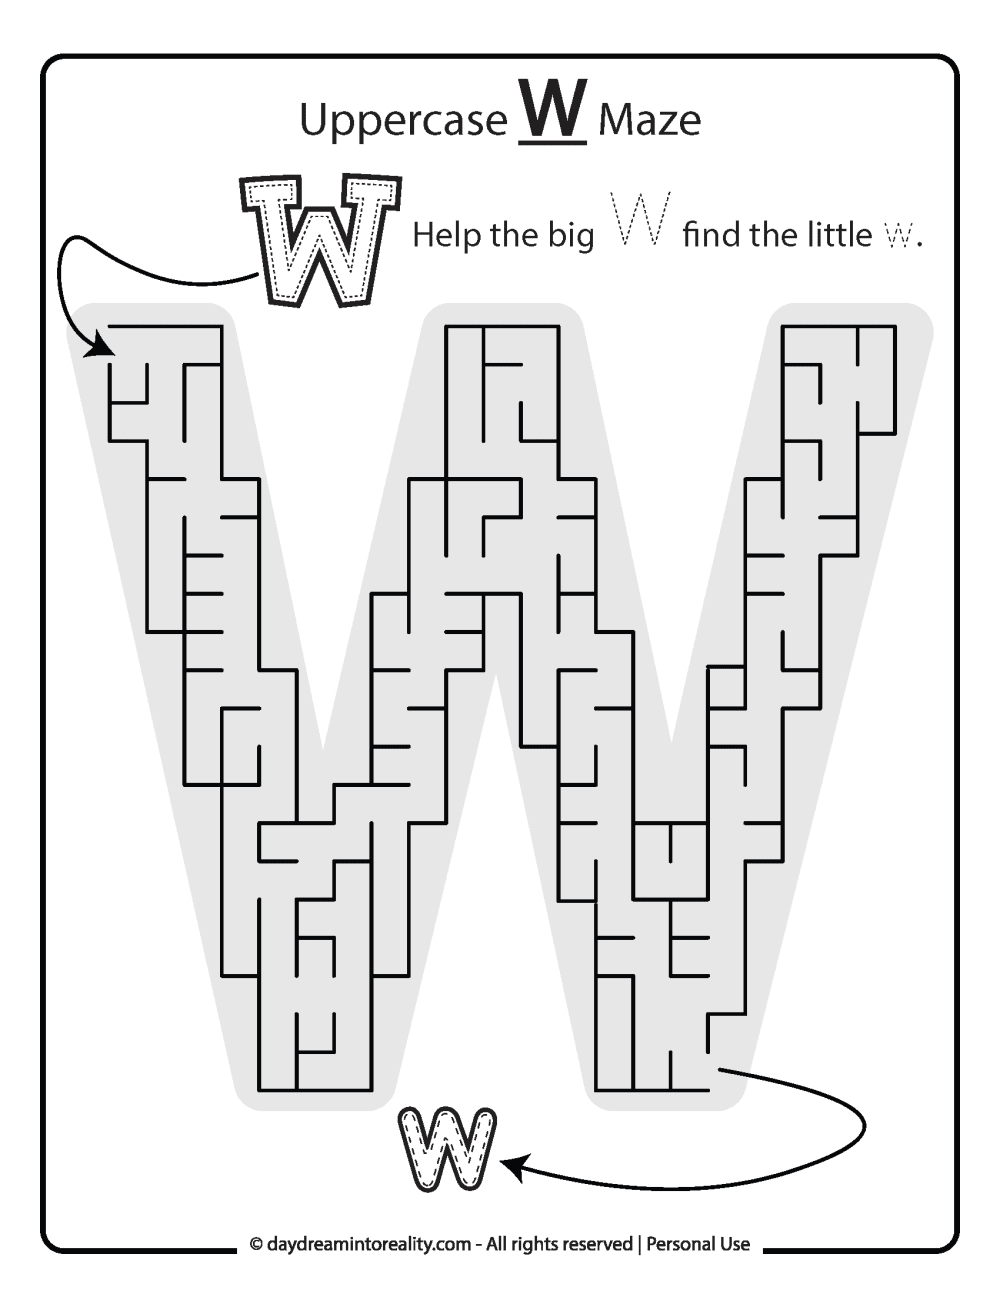 Uppercase "W" Maze Free Printable